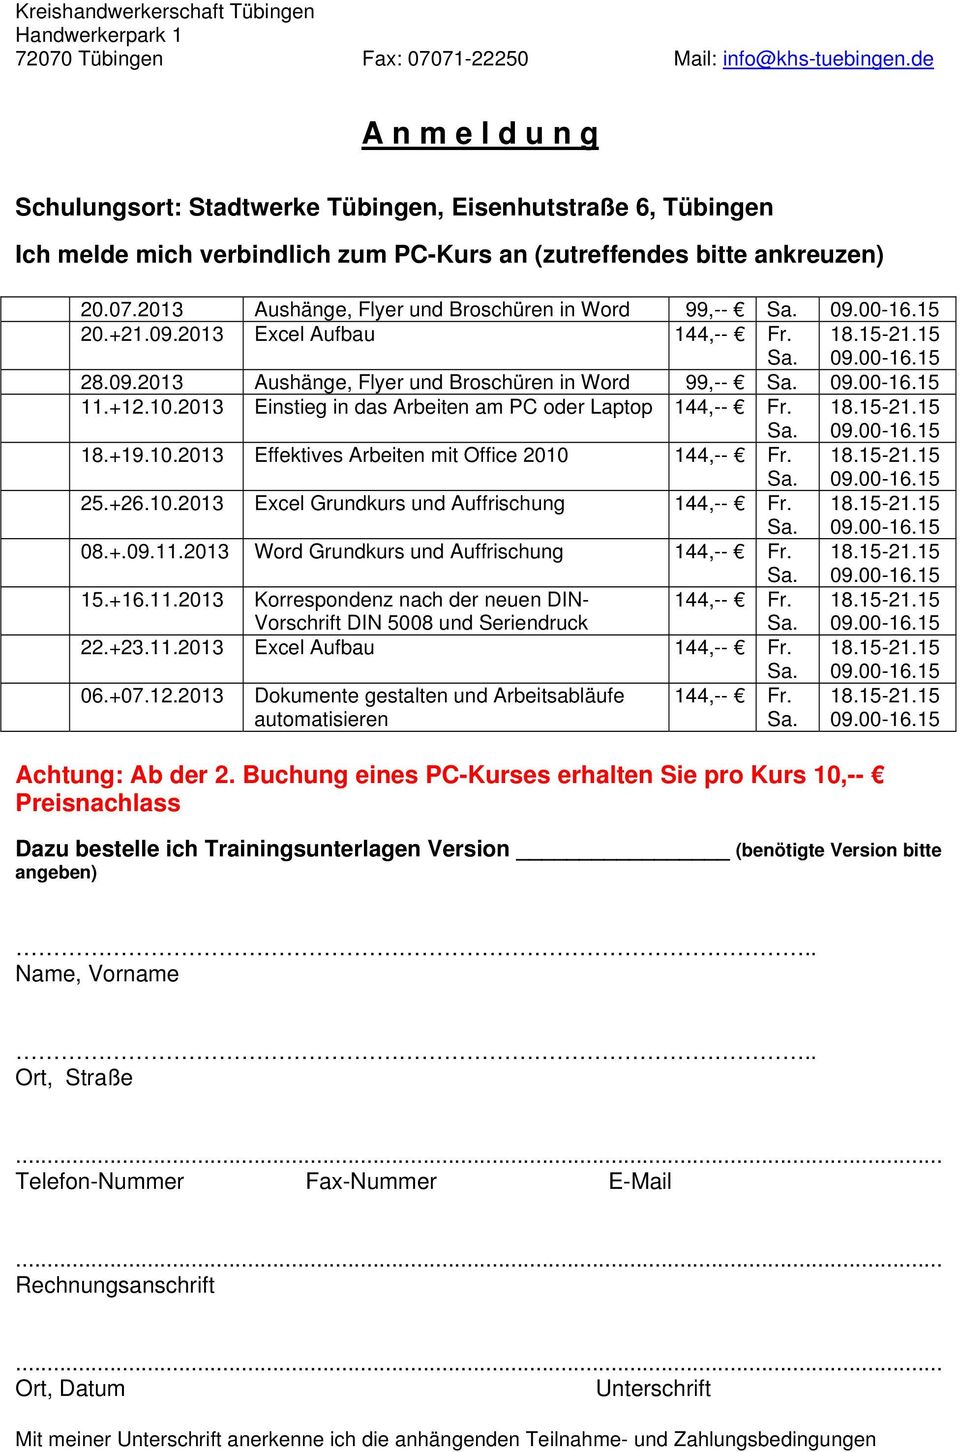 2013 Aushänge, Flyer und Broschüren in Word 99,-- 20.+21.09.2013 Excel Aufbau 144,-- Fr. 28.09.2013 Aushänge, Flyer und Broschüren in Word 99,-- 11.+12.10.